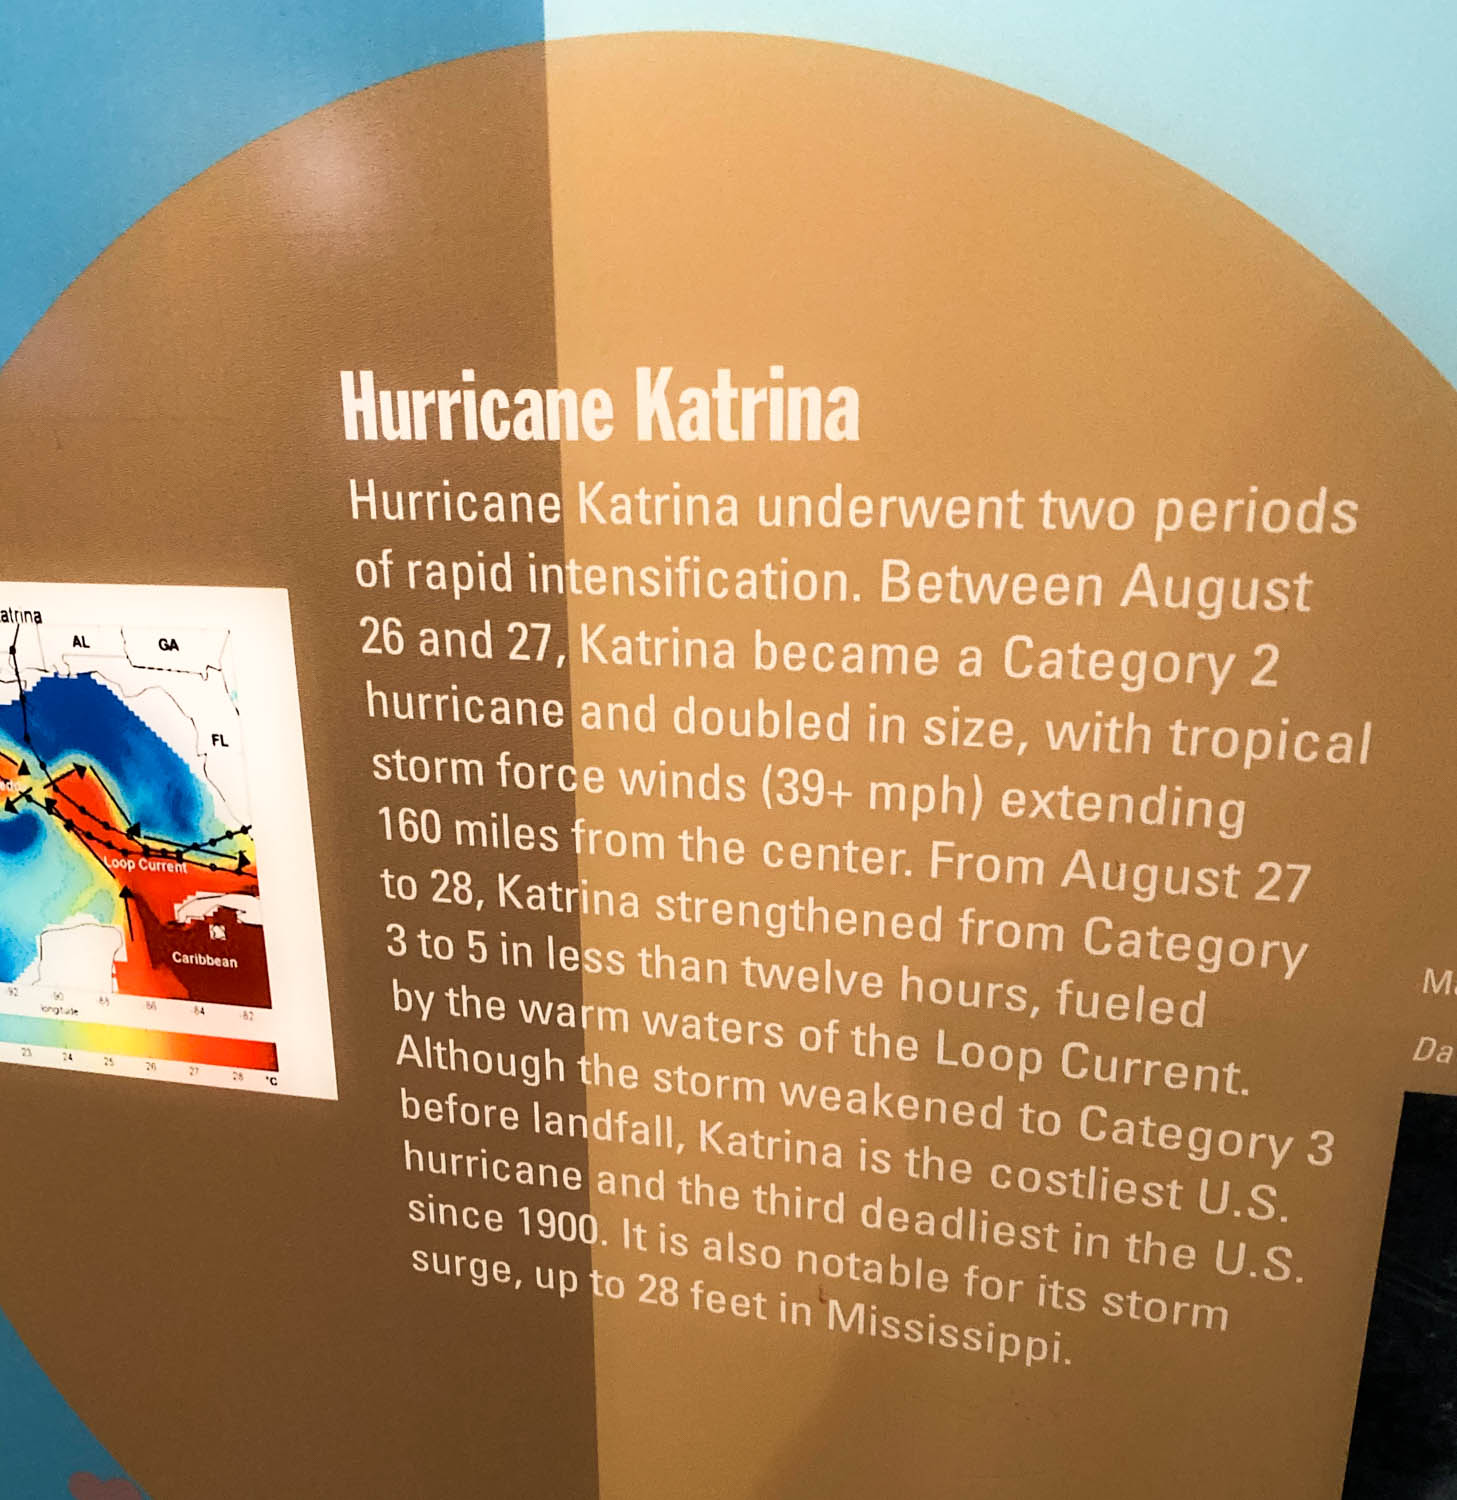 Hurricane Katrina Facts 2020